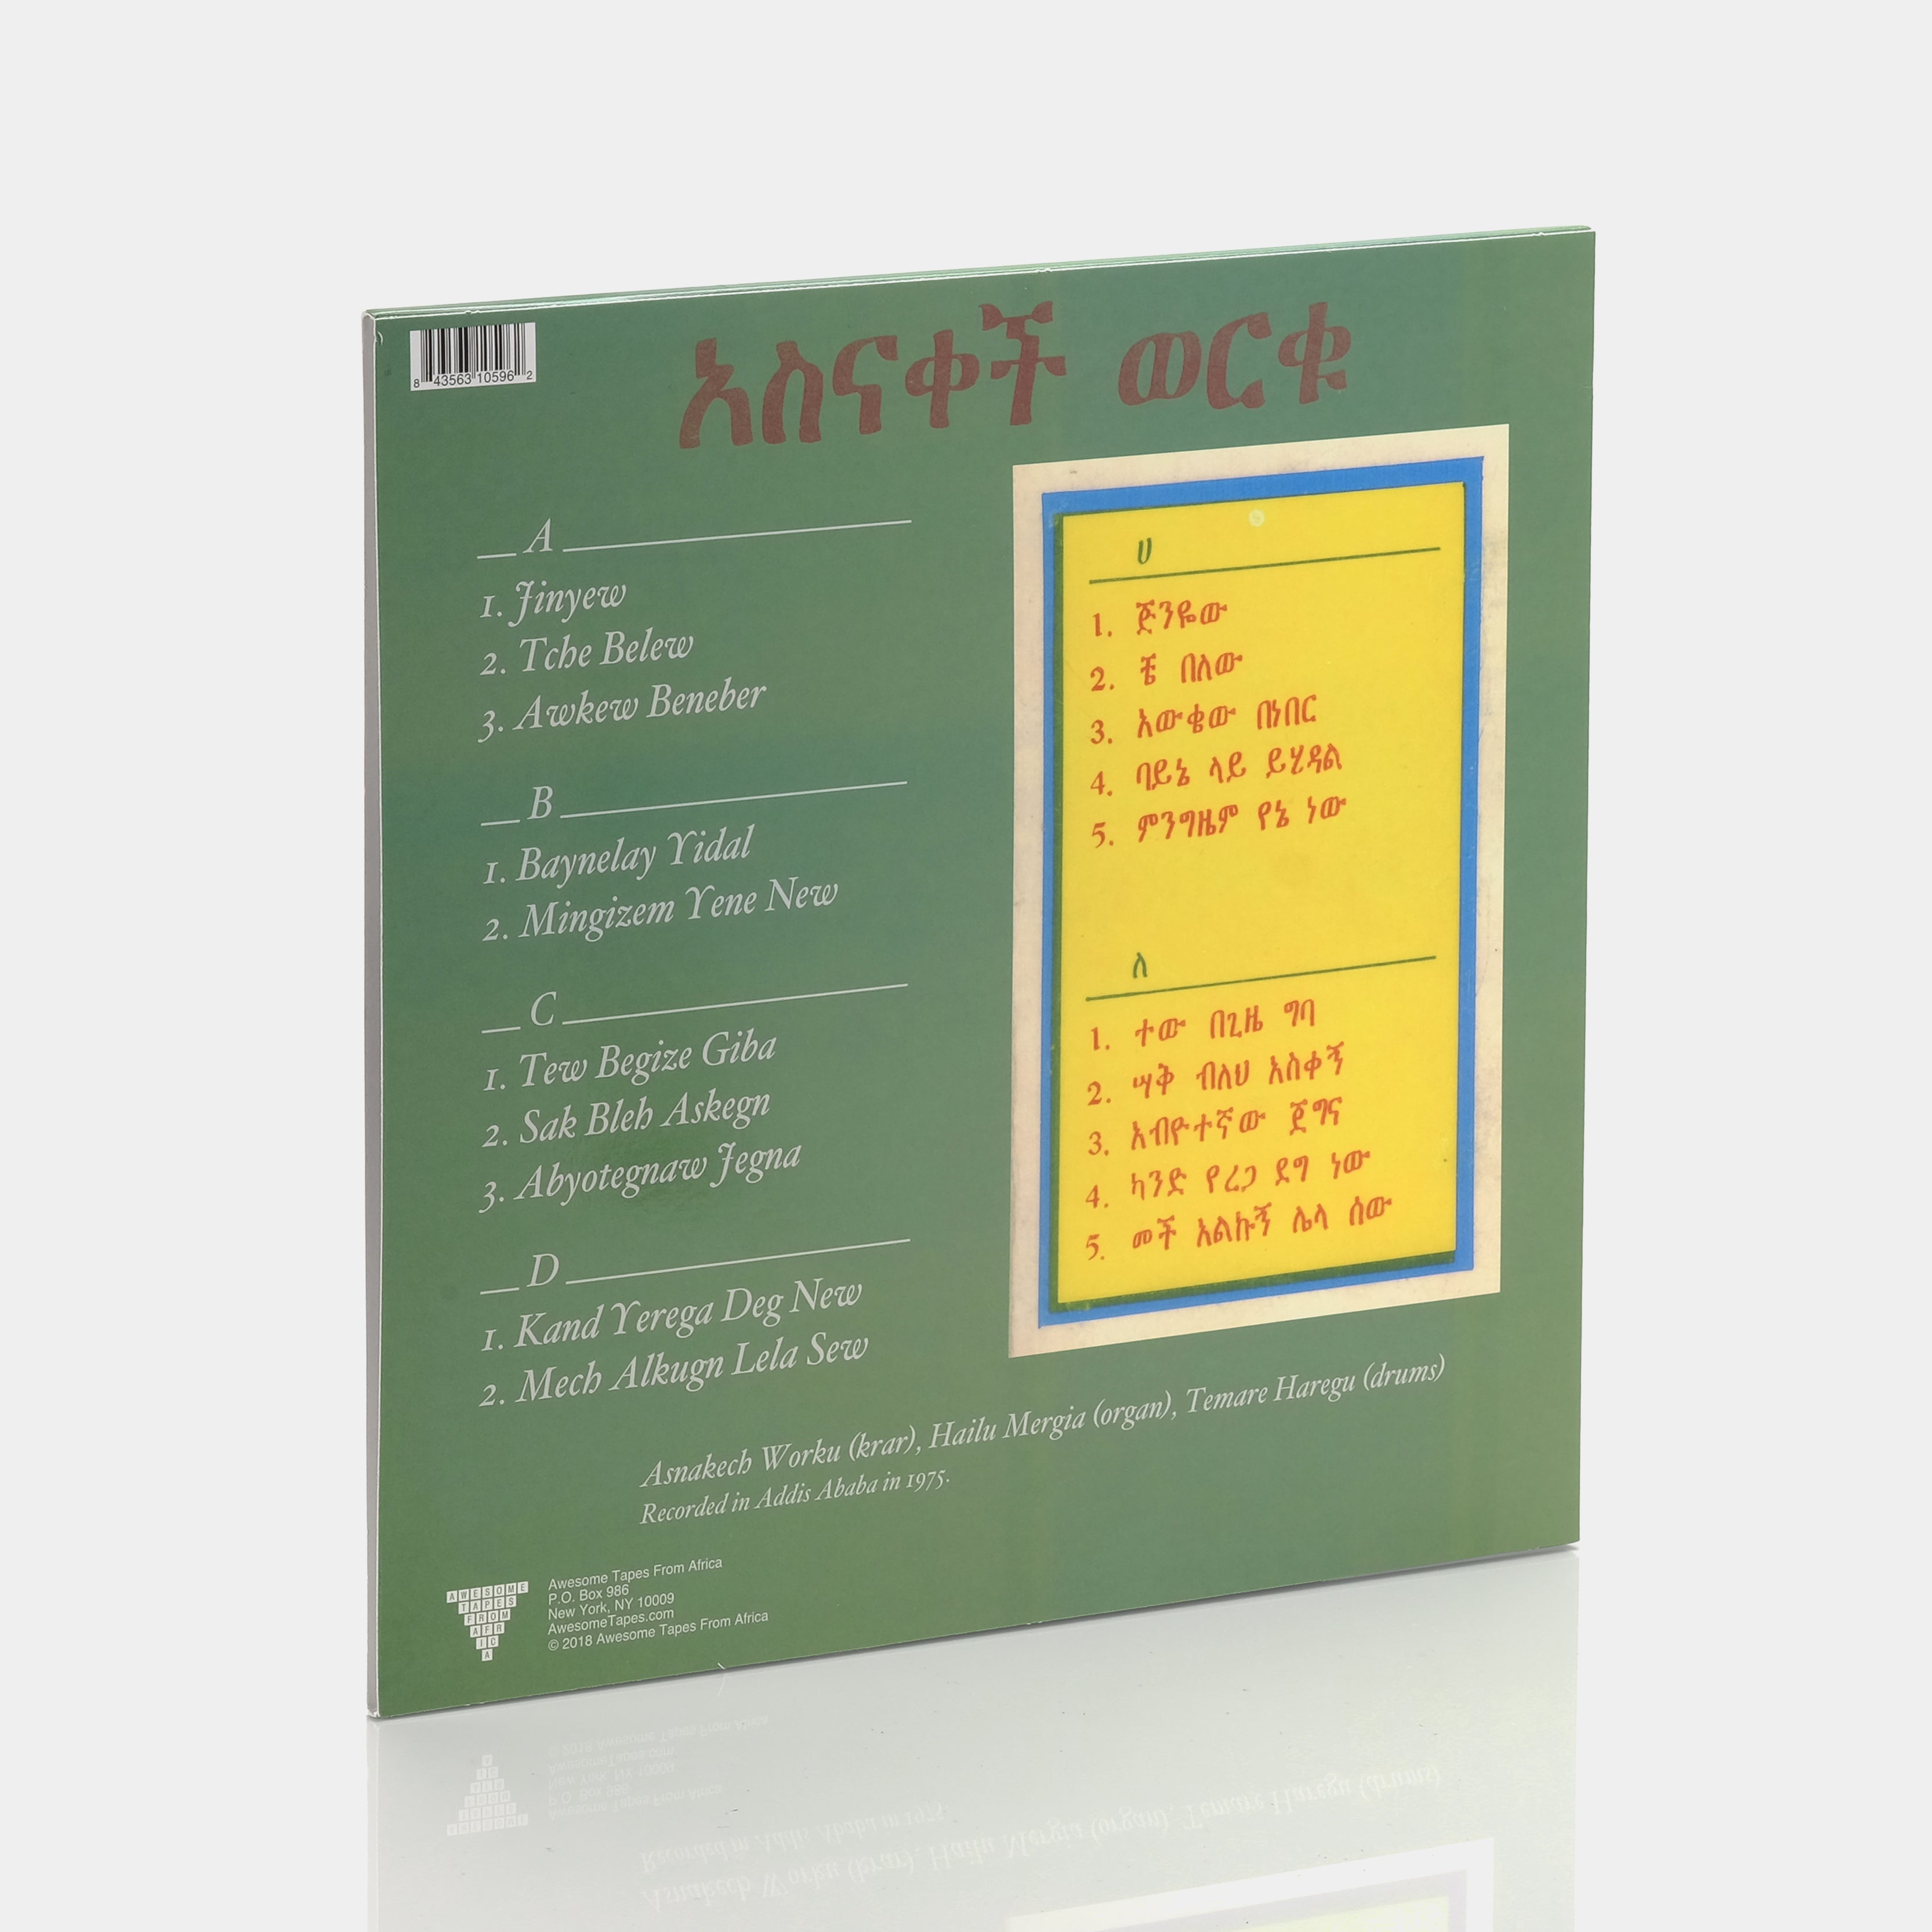 Asnakech Worku - Asnakech 2xLP Vinyl Record